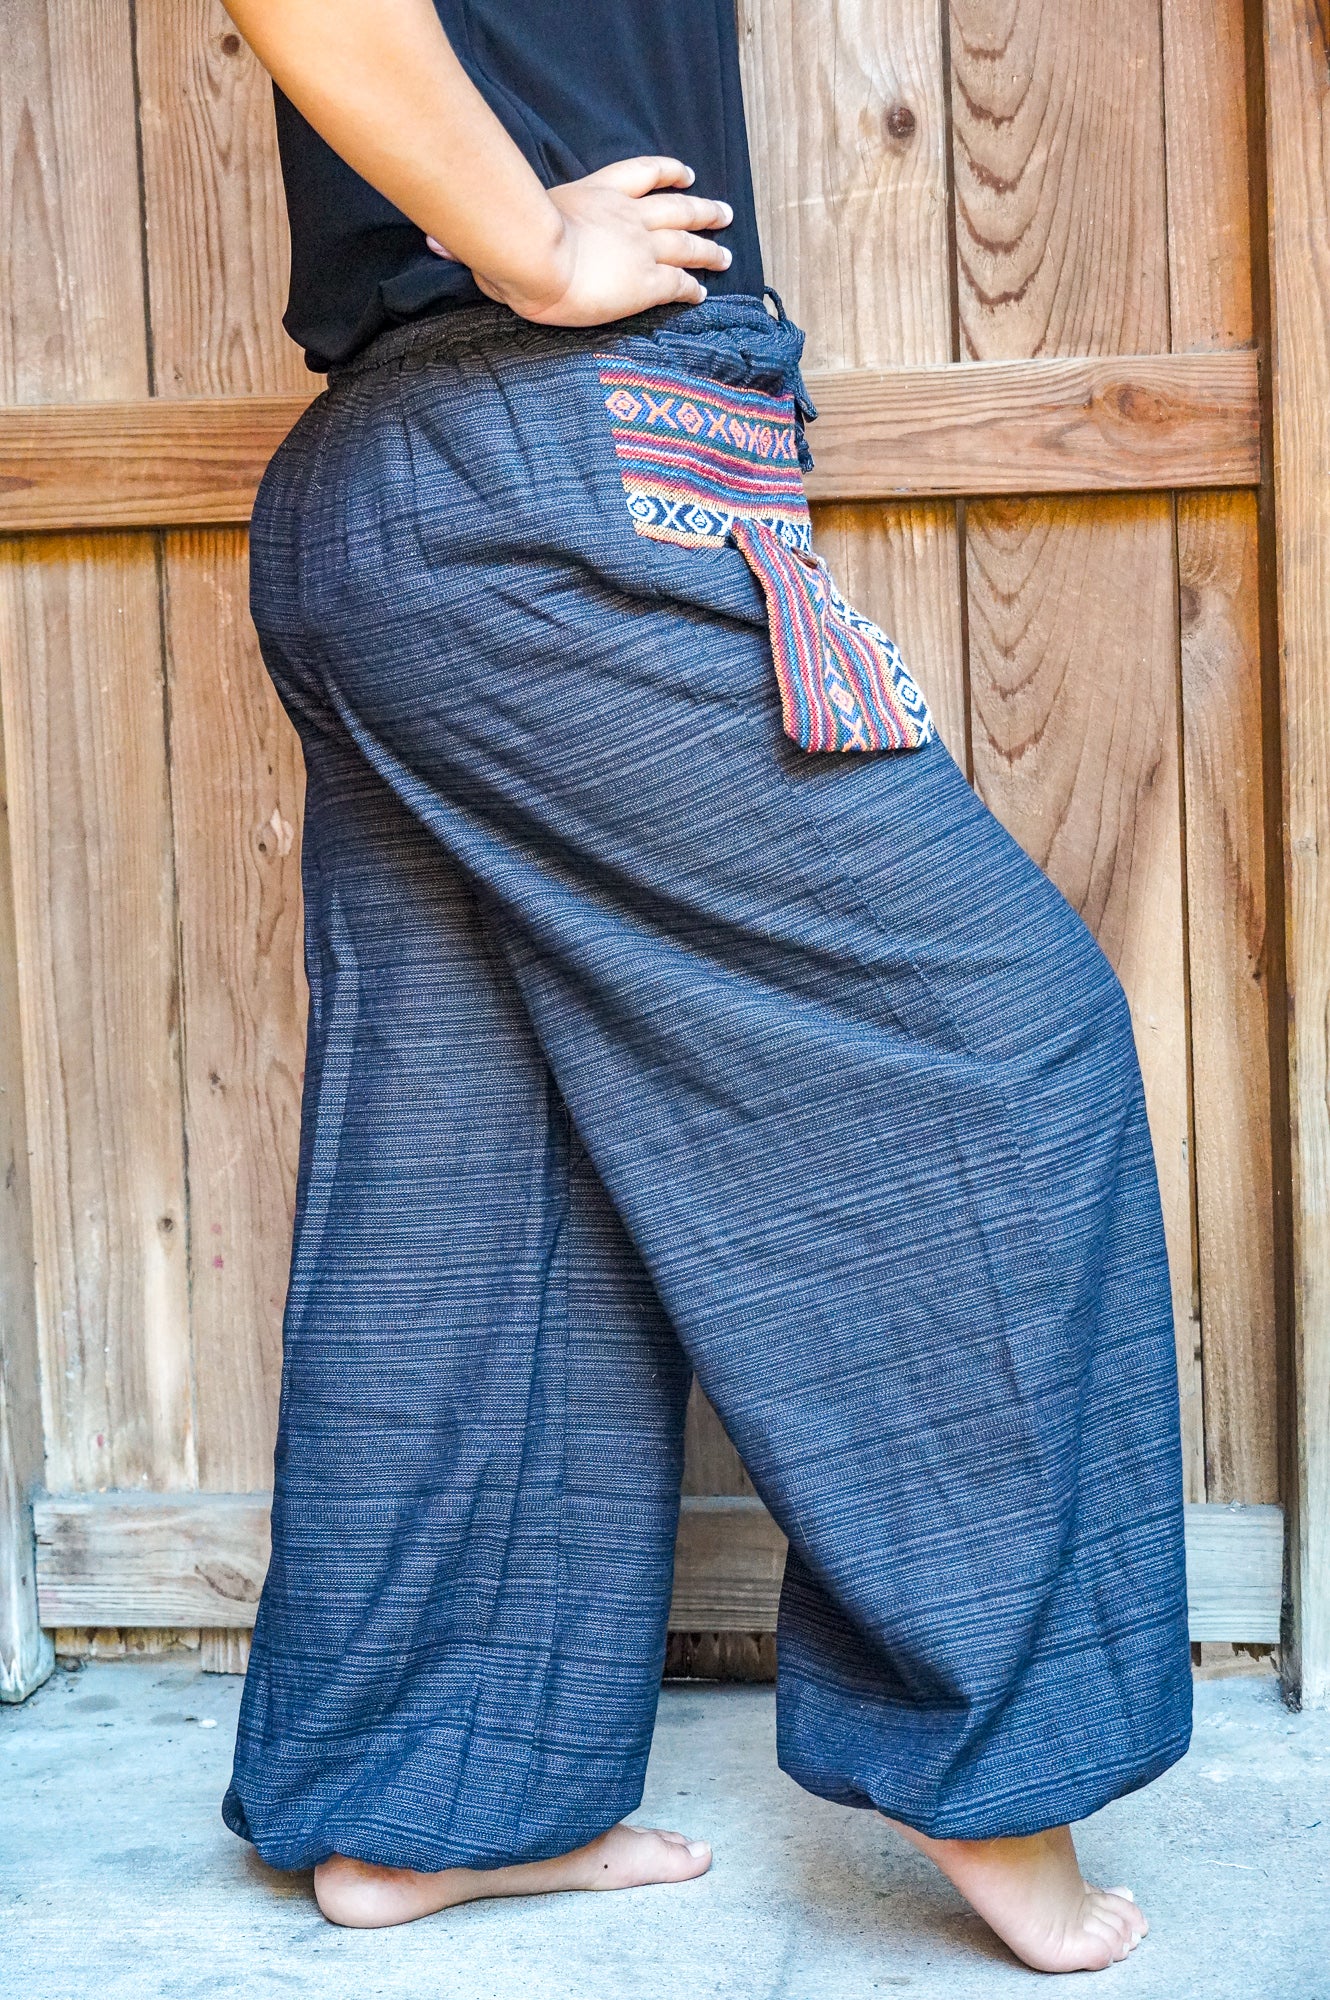 Cotton Women Tribal Boho Pants Hippie Pants